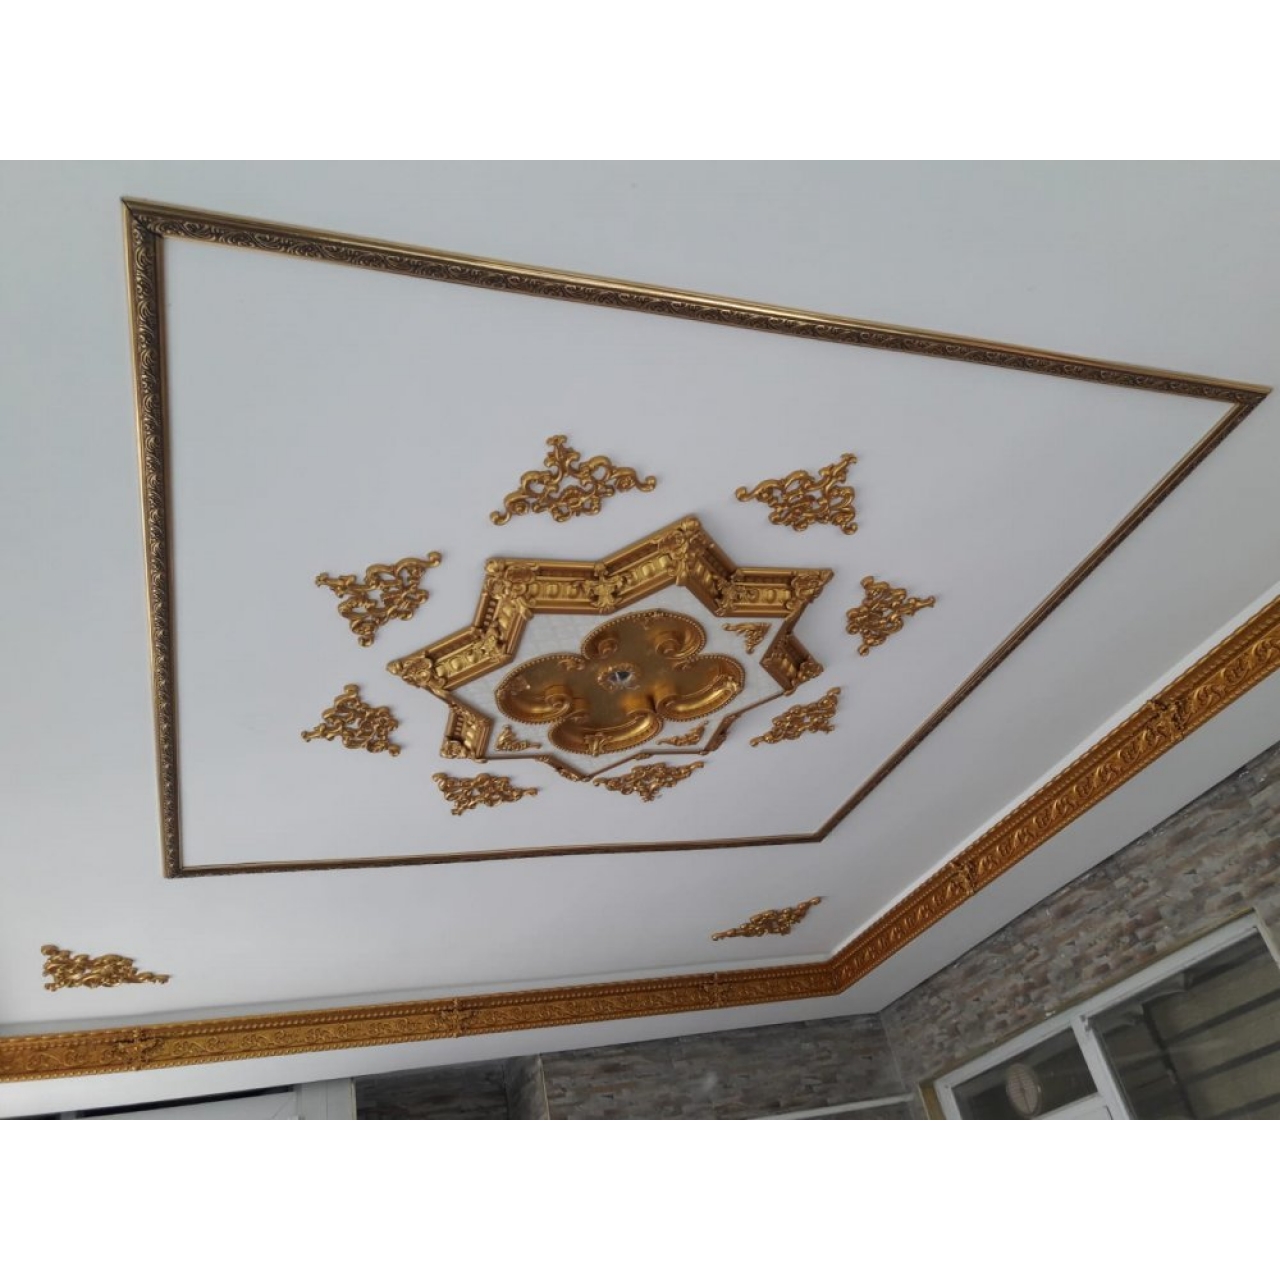 Decogold Saray Tavan Yıldız Altın Göbek 90 cm